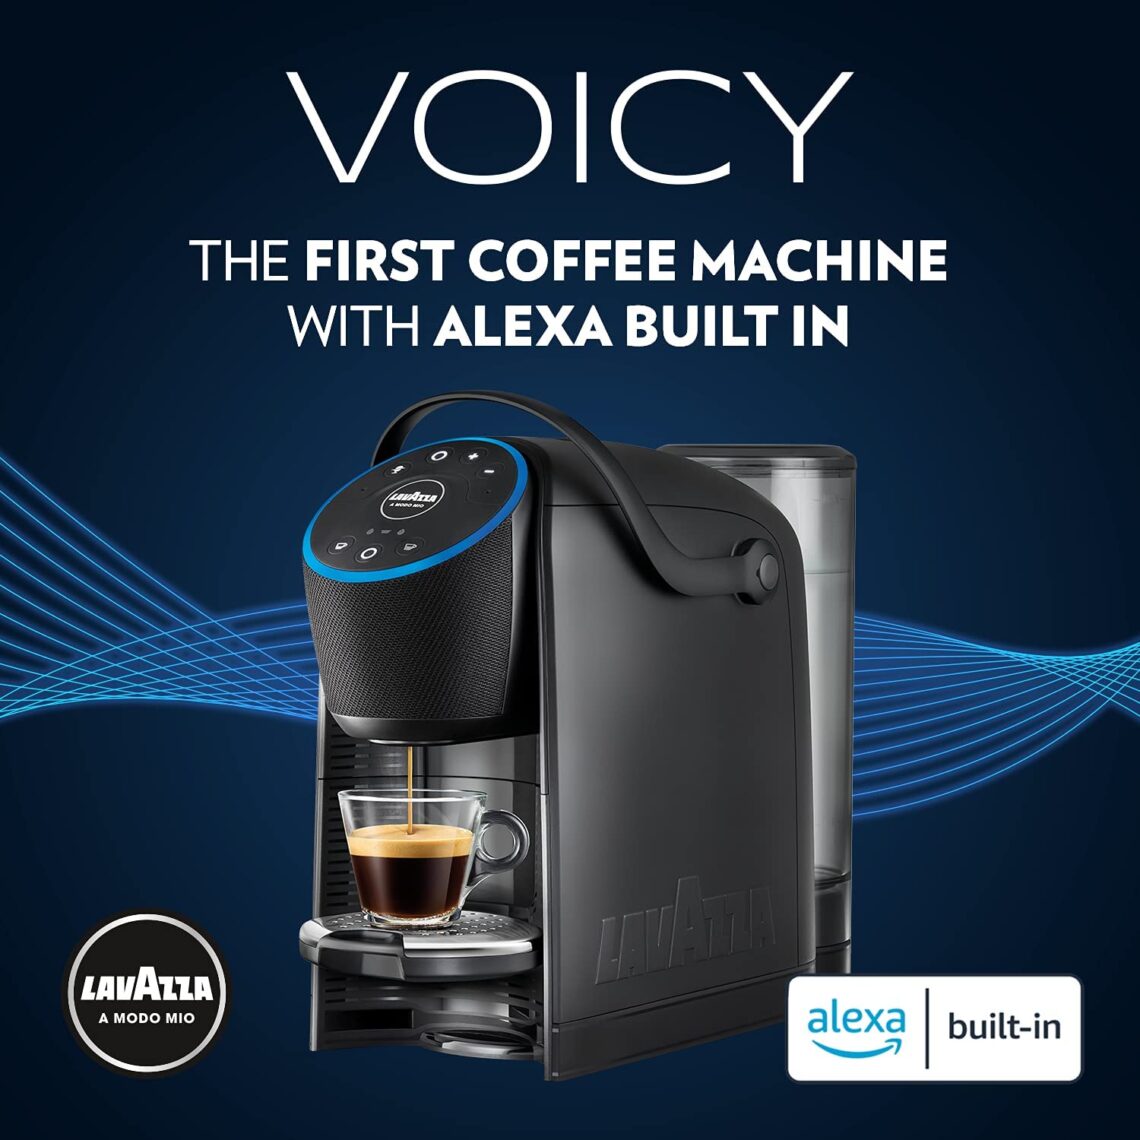 Máquina de café da Lavazza tem Alexa embutida